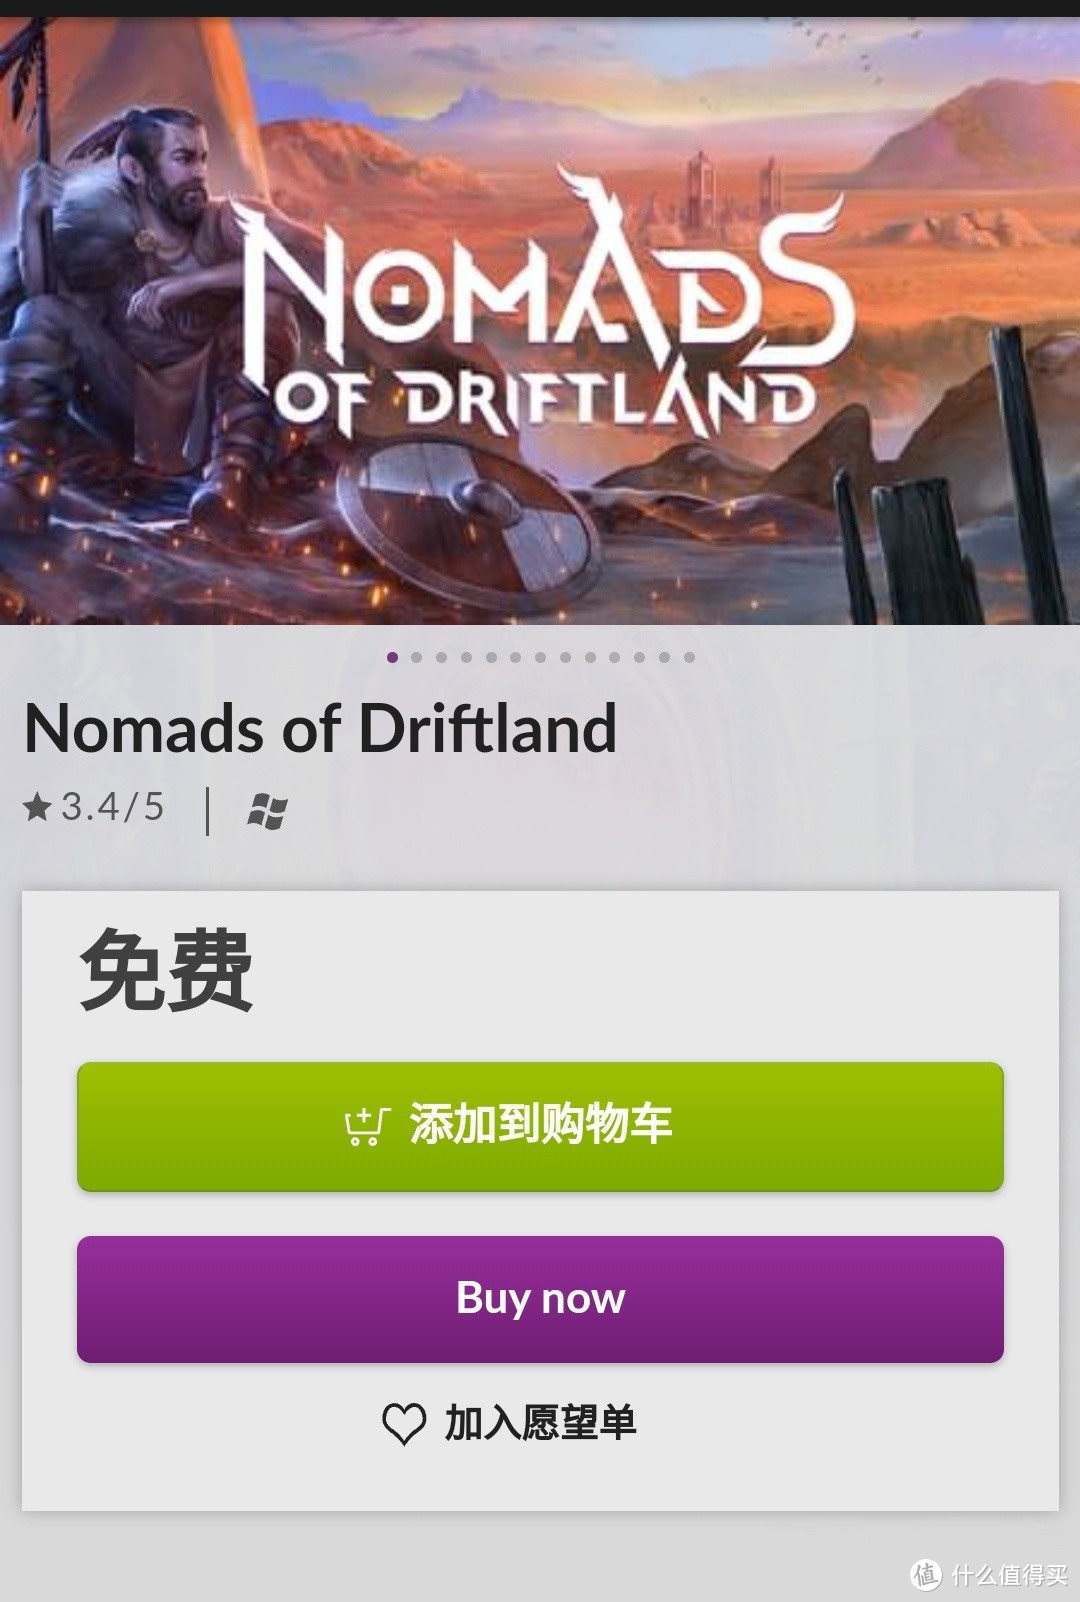 【喜加二】GOG免费领取《Nomads of Driftland》价值22元  STEAM免费领取《星际小队》价值118元